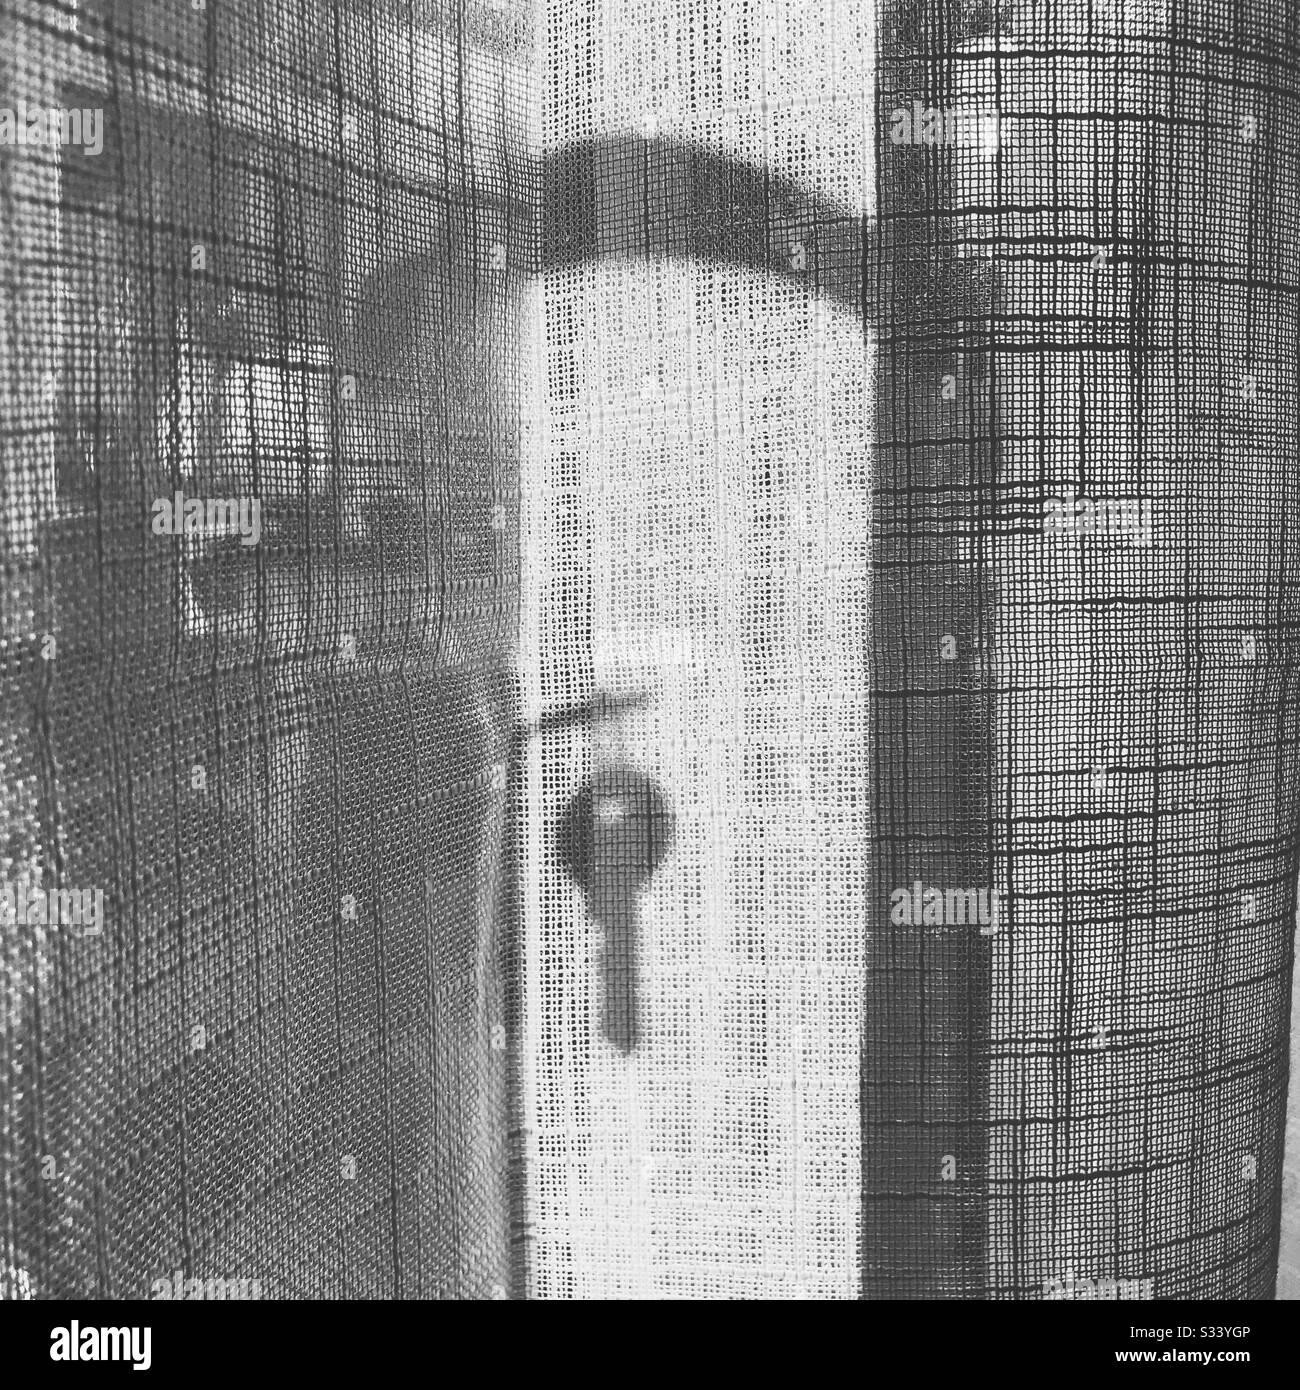 Ein Schlüssel, der hinter einem weißen Gazen-Netzvorhang vor den französischen Türen von einem Schloss im Silhouettenschatten aufgehängt ist Stockfoto